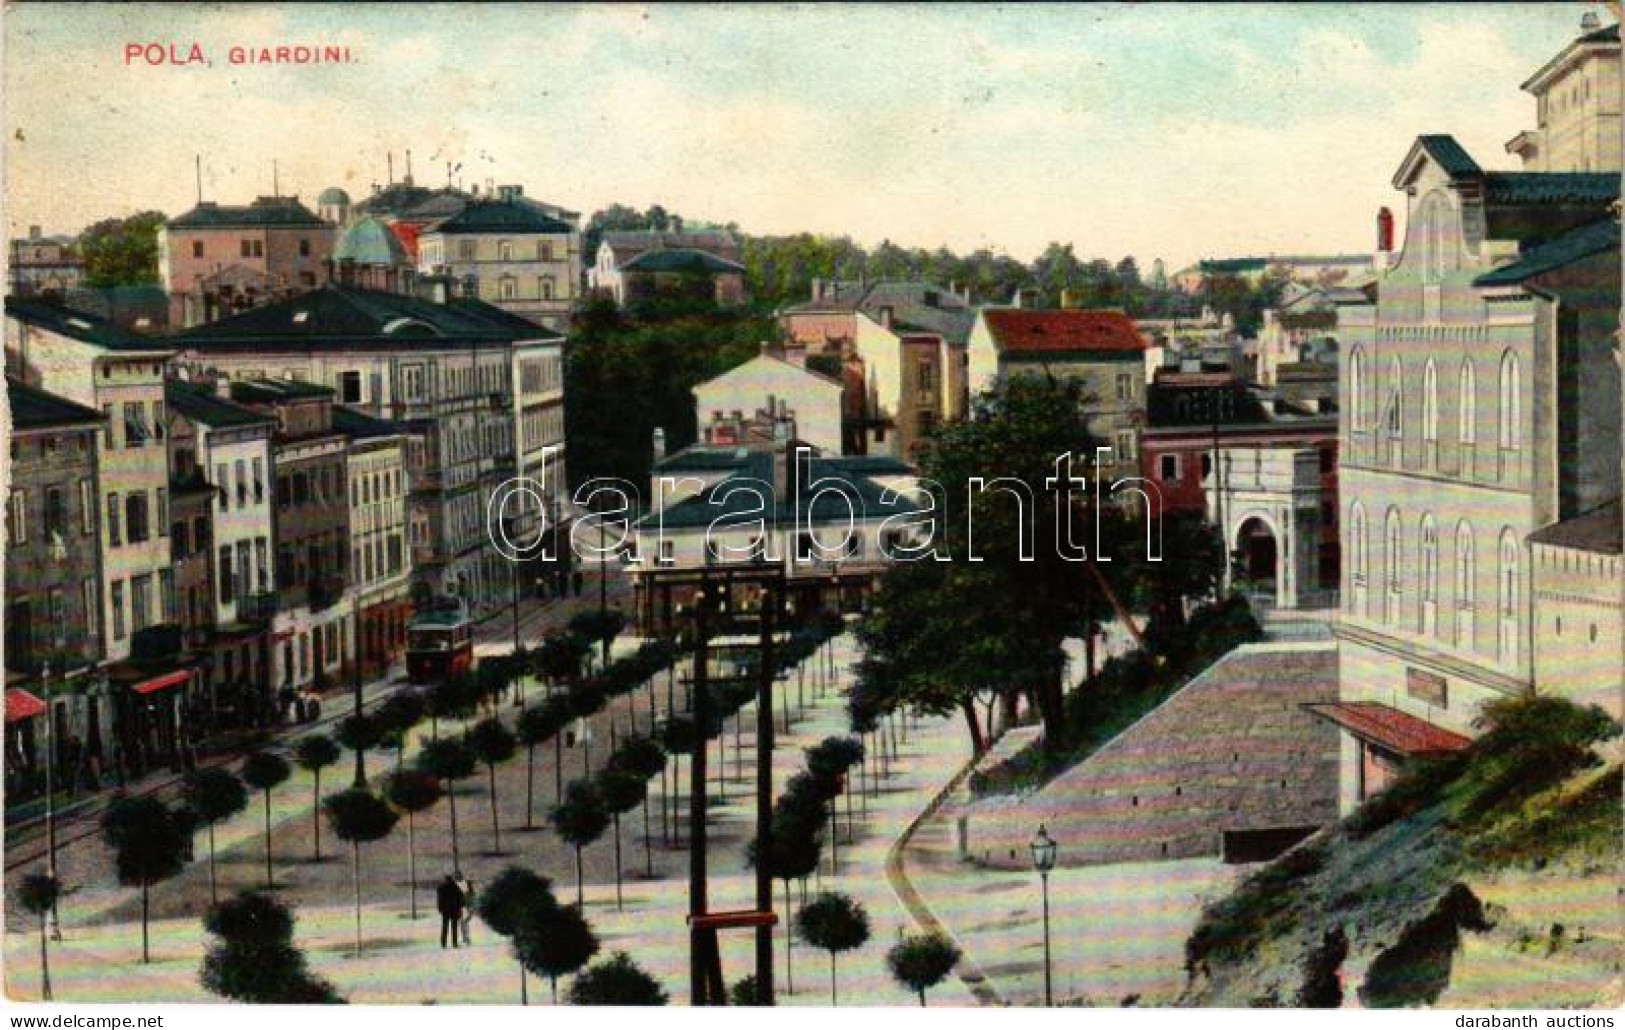 T2/T3 1909 Pola, Pula; Giardini / Square, Tram. G. Fano, POla, 1908/9. No. 7. (Rb) - Ohne Zuordnung